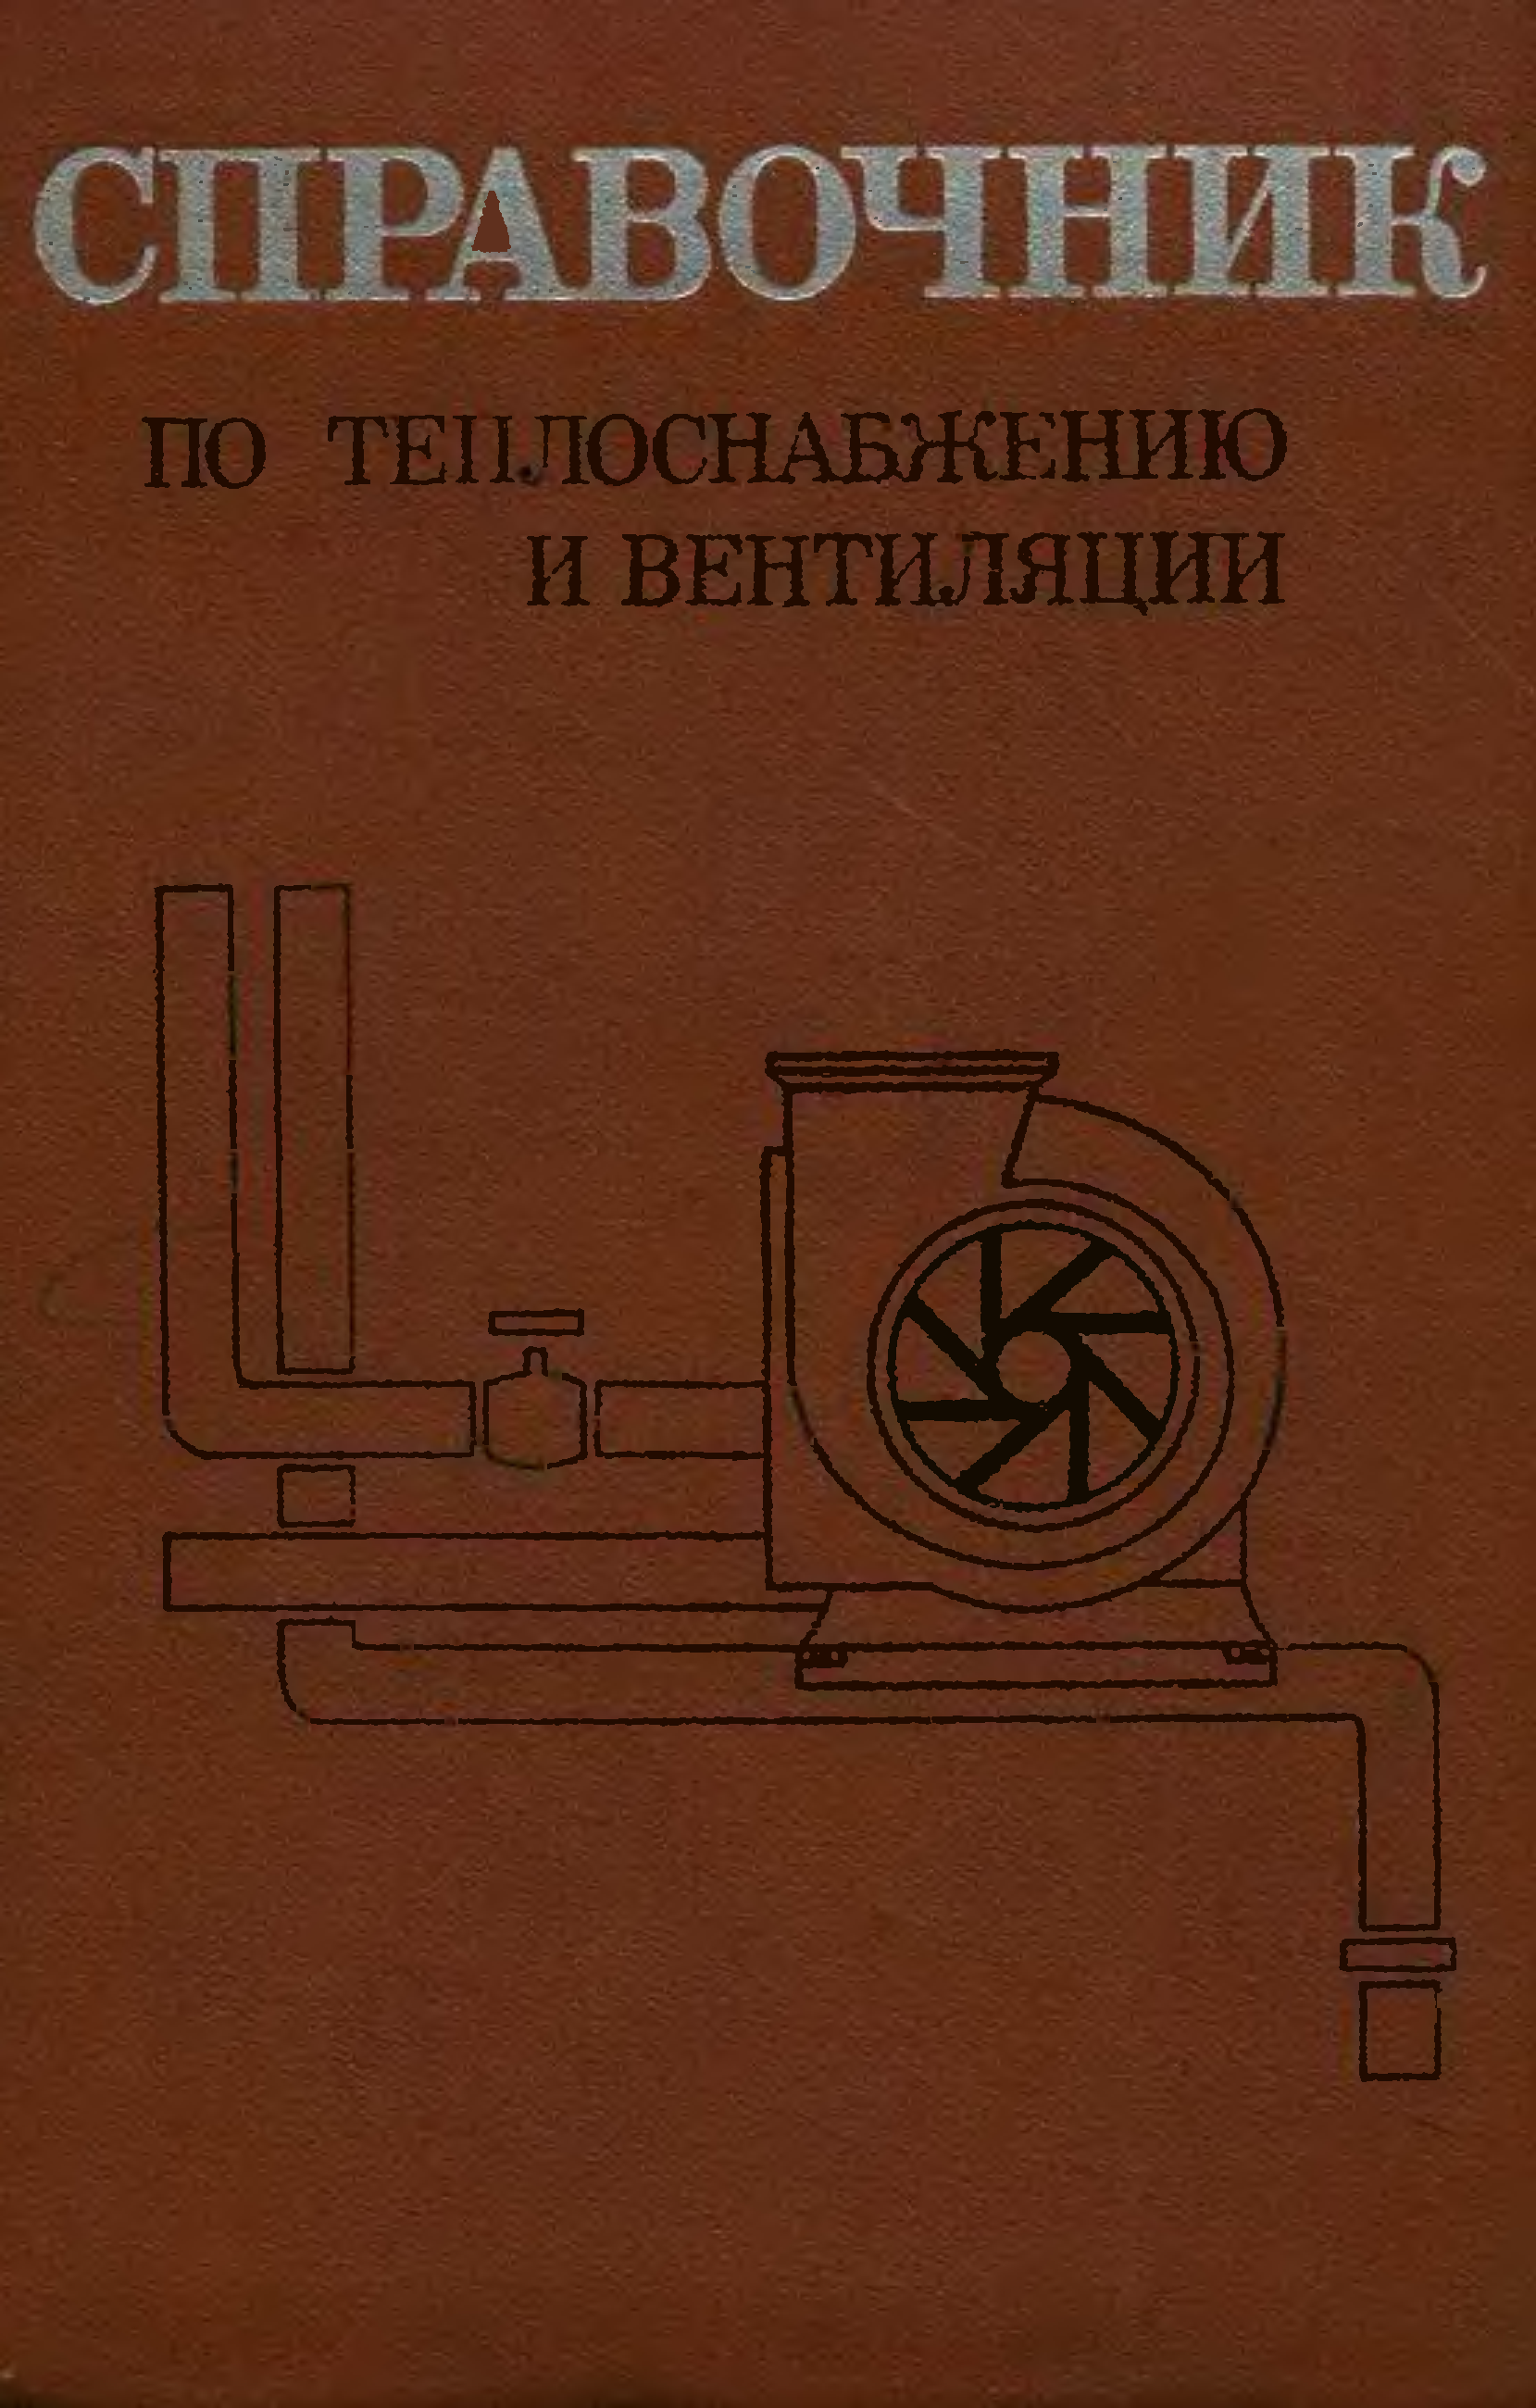 Щекин справочник по теплоснабжению и вентиляции 1968г.